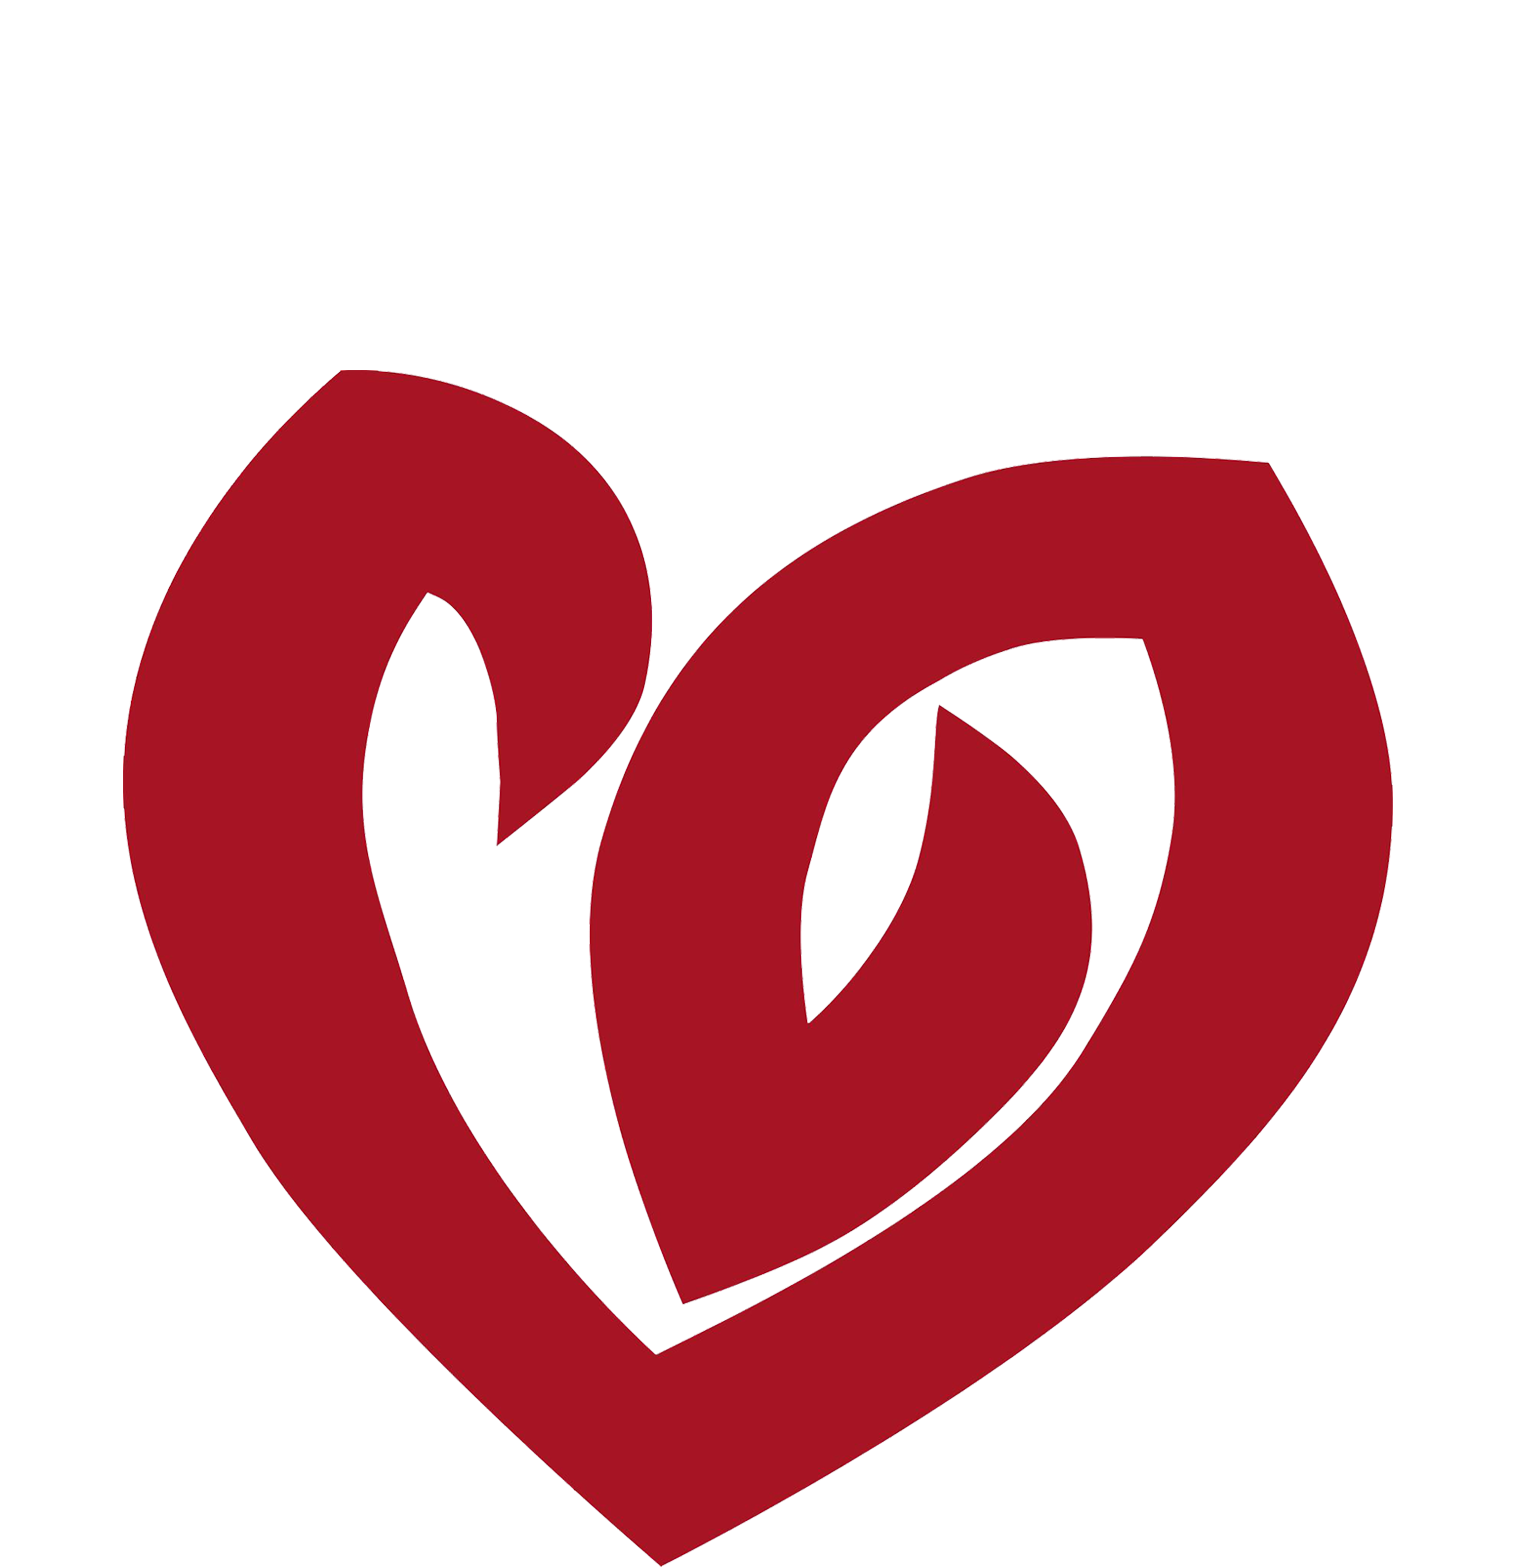 Catholic Heart Work Camp Mission Trip - Catholic Heart Work Camp Heart (1666x1570)